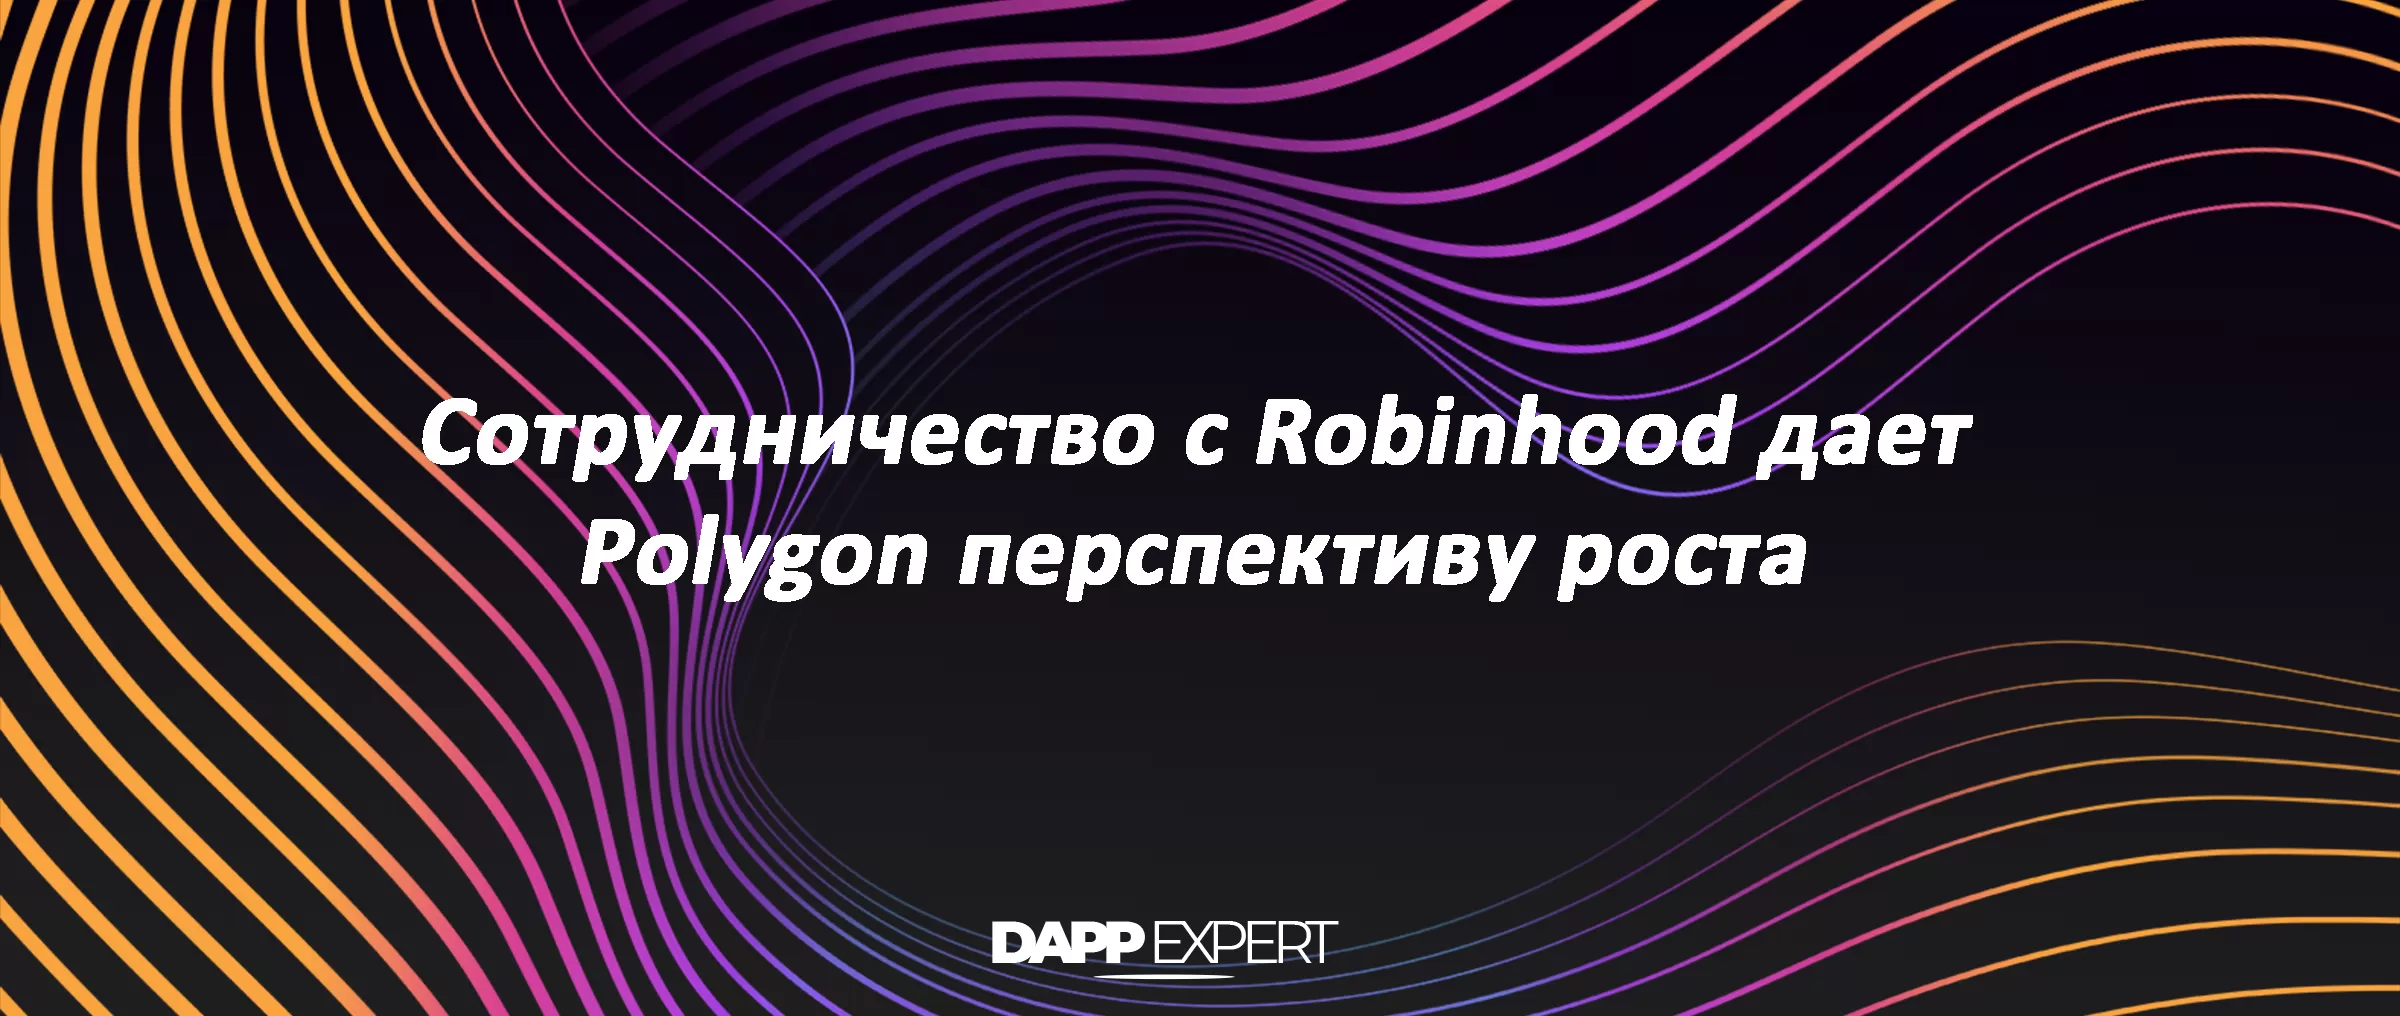 Сотрудничество с Robinhood дает Polygon перспективу роста